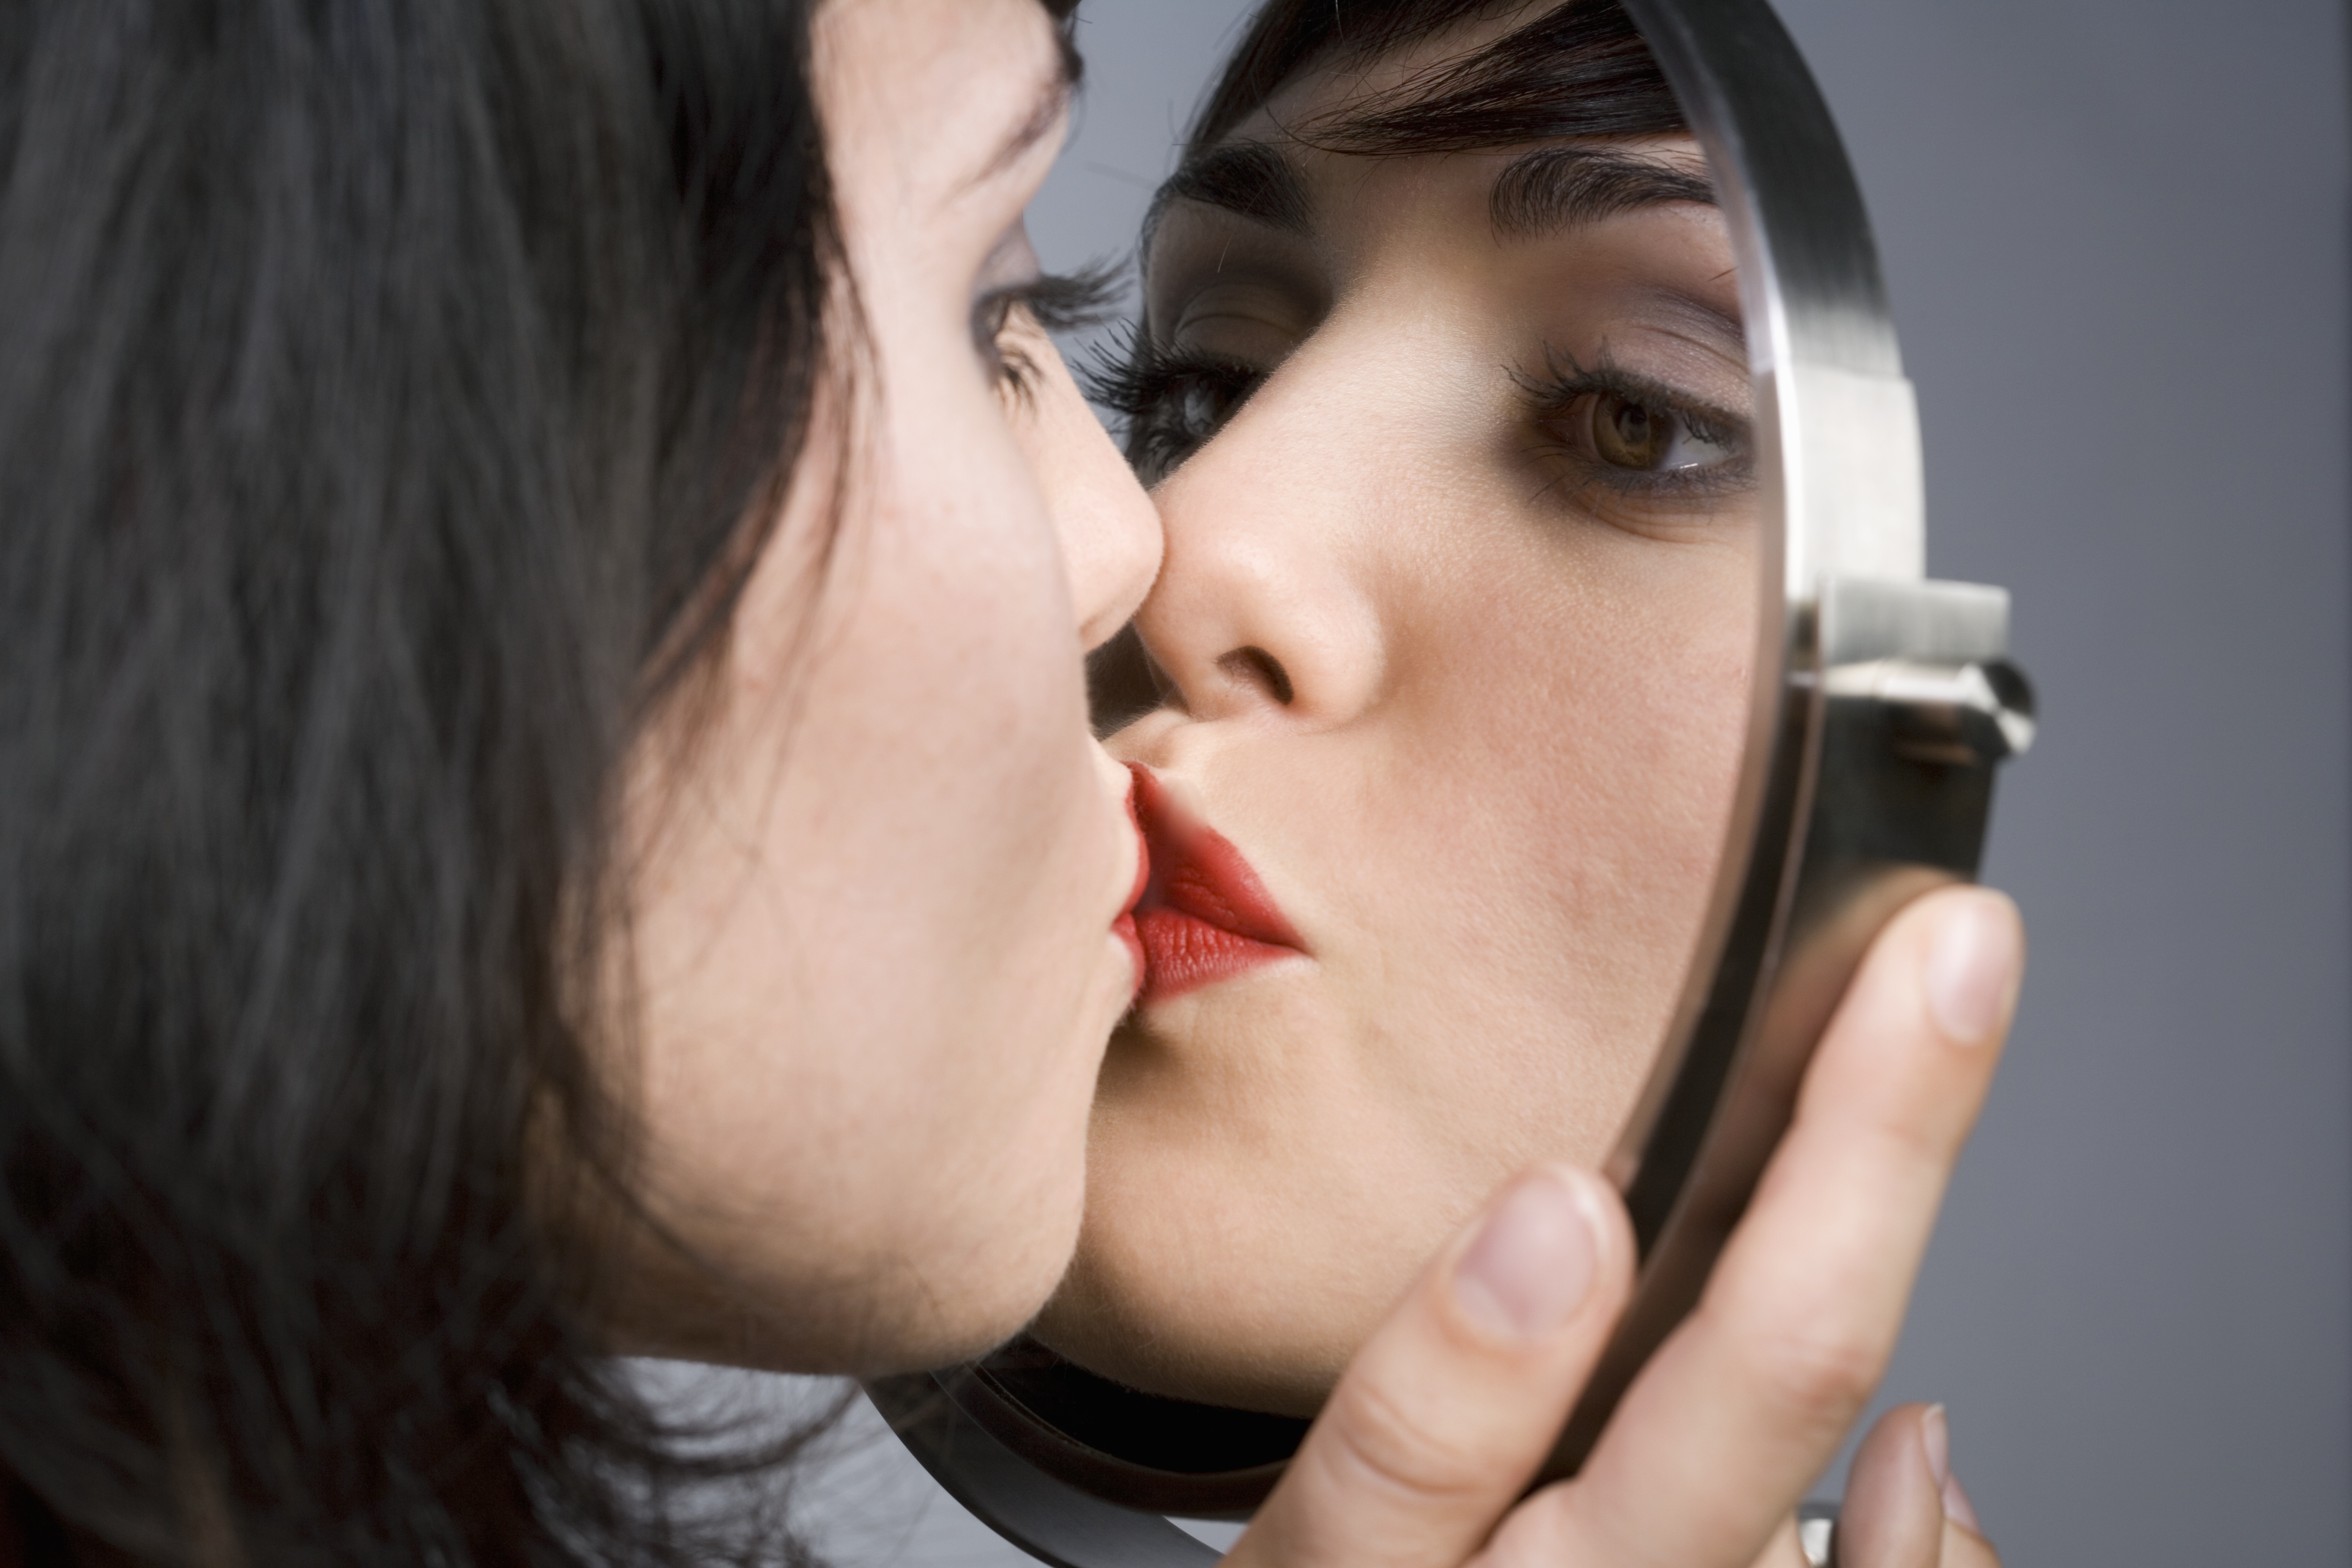 Страстно сама себя. Эгоистичный человек. Девушка целует свое отражение в зеркале. Любовь к себе. О самовлюбленности и эгоизме.